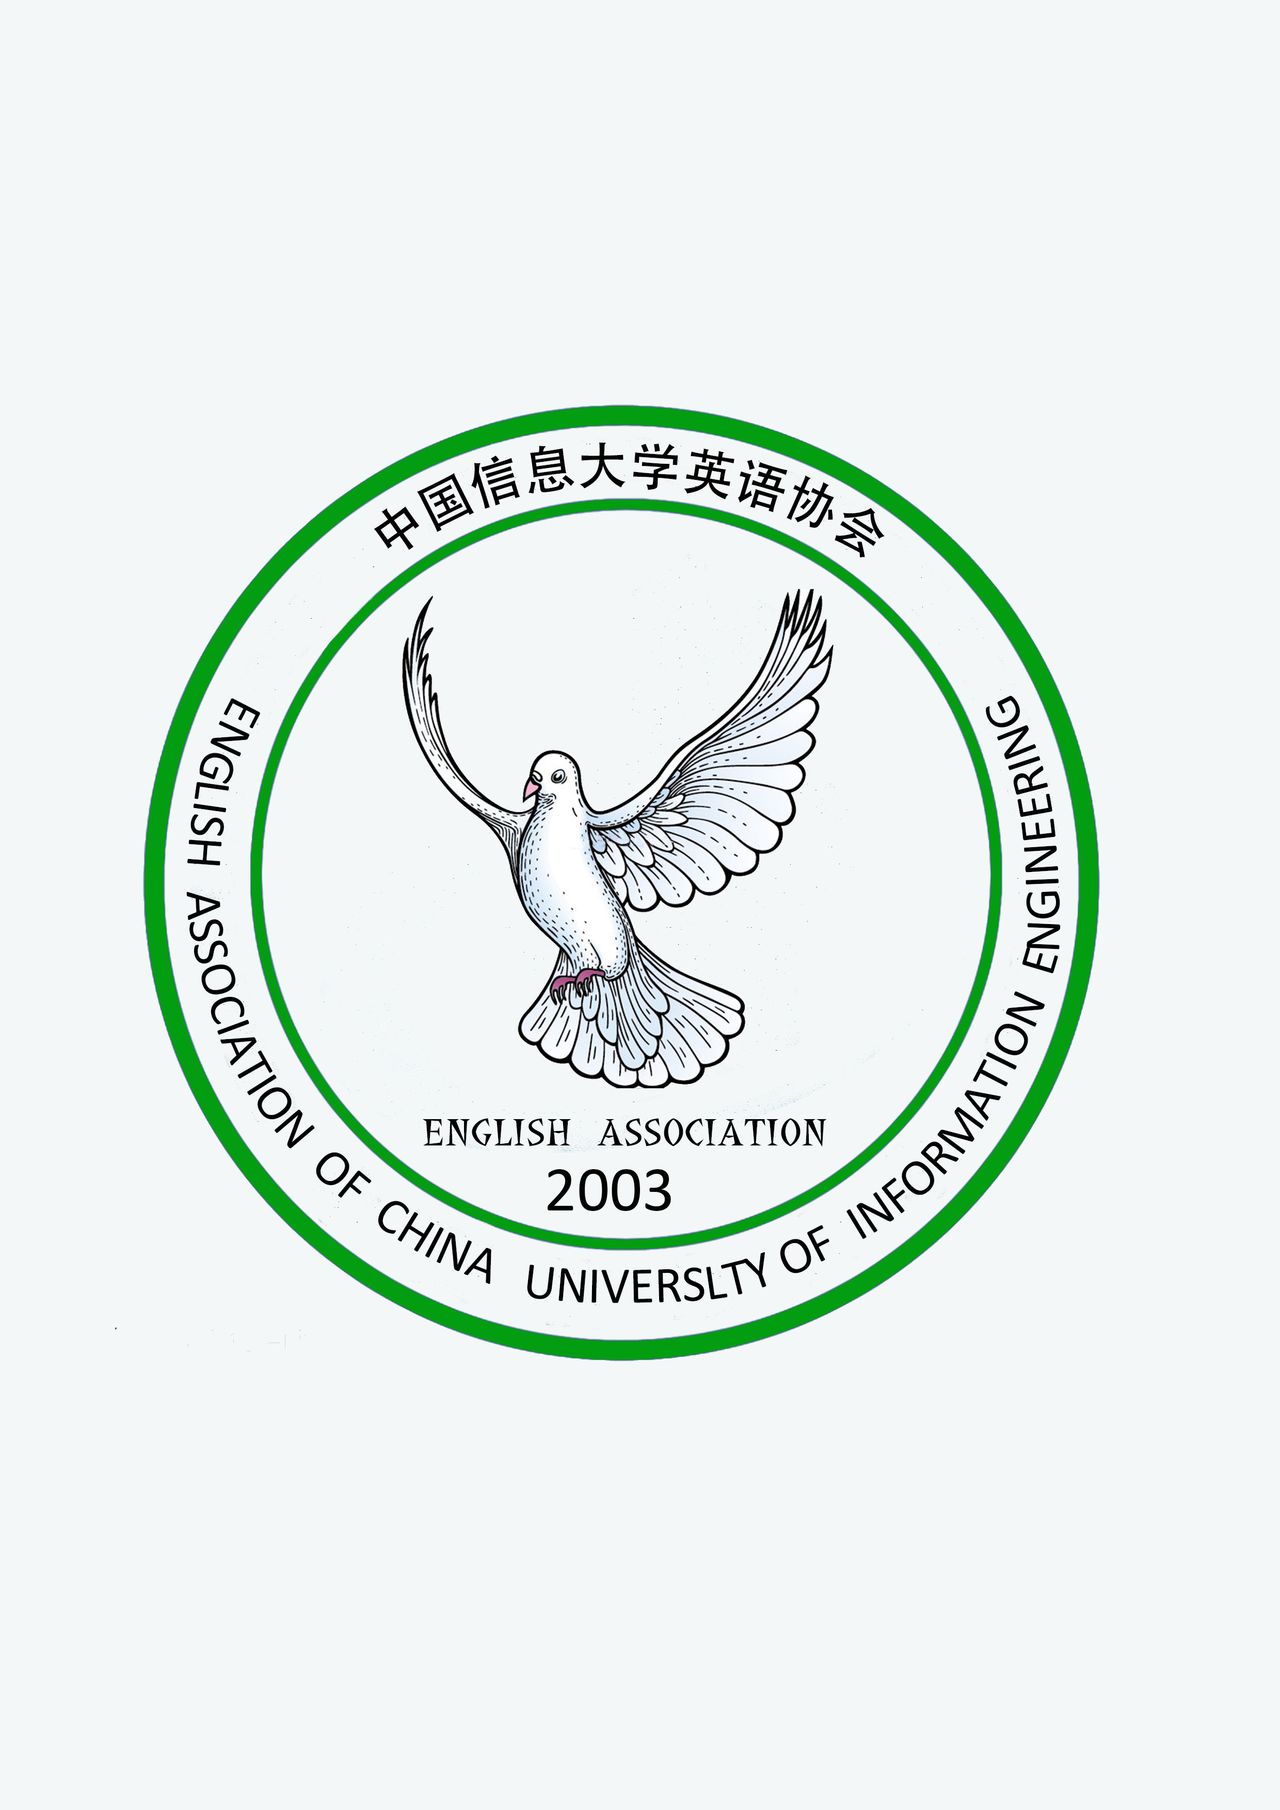 中國信息大學英語協會